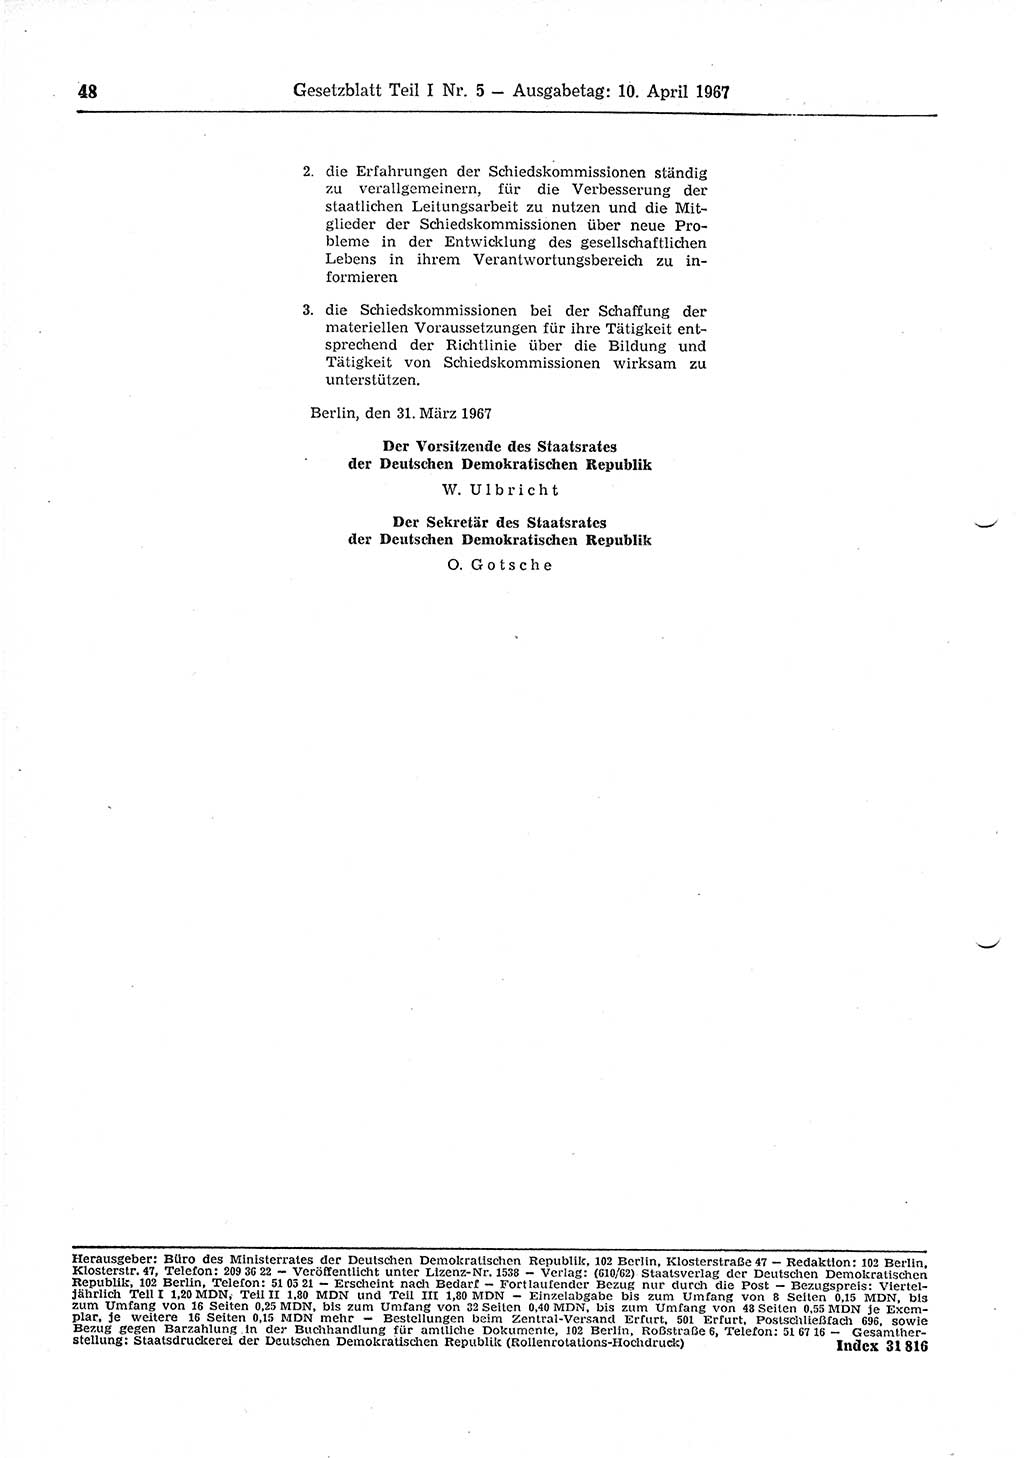 Gesetzblatt (GBl.) der Deutschen Demokratischen Republik (DDR) Teil Ⅰ 1967, Seite 48 (GBl. DDR Ⅰ 1967, S. 48)